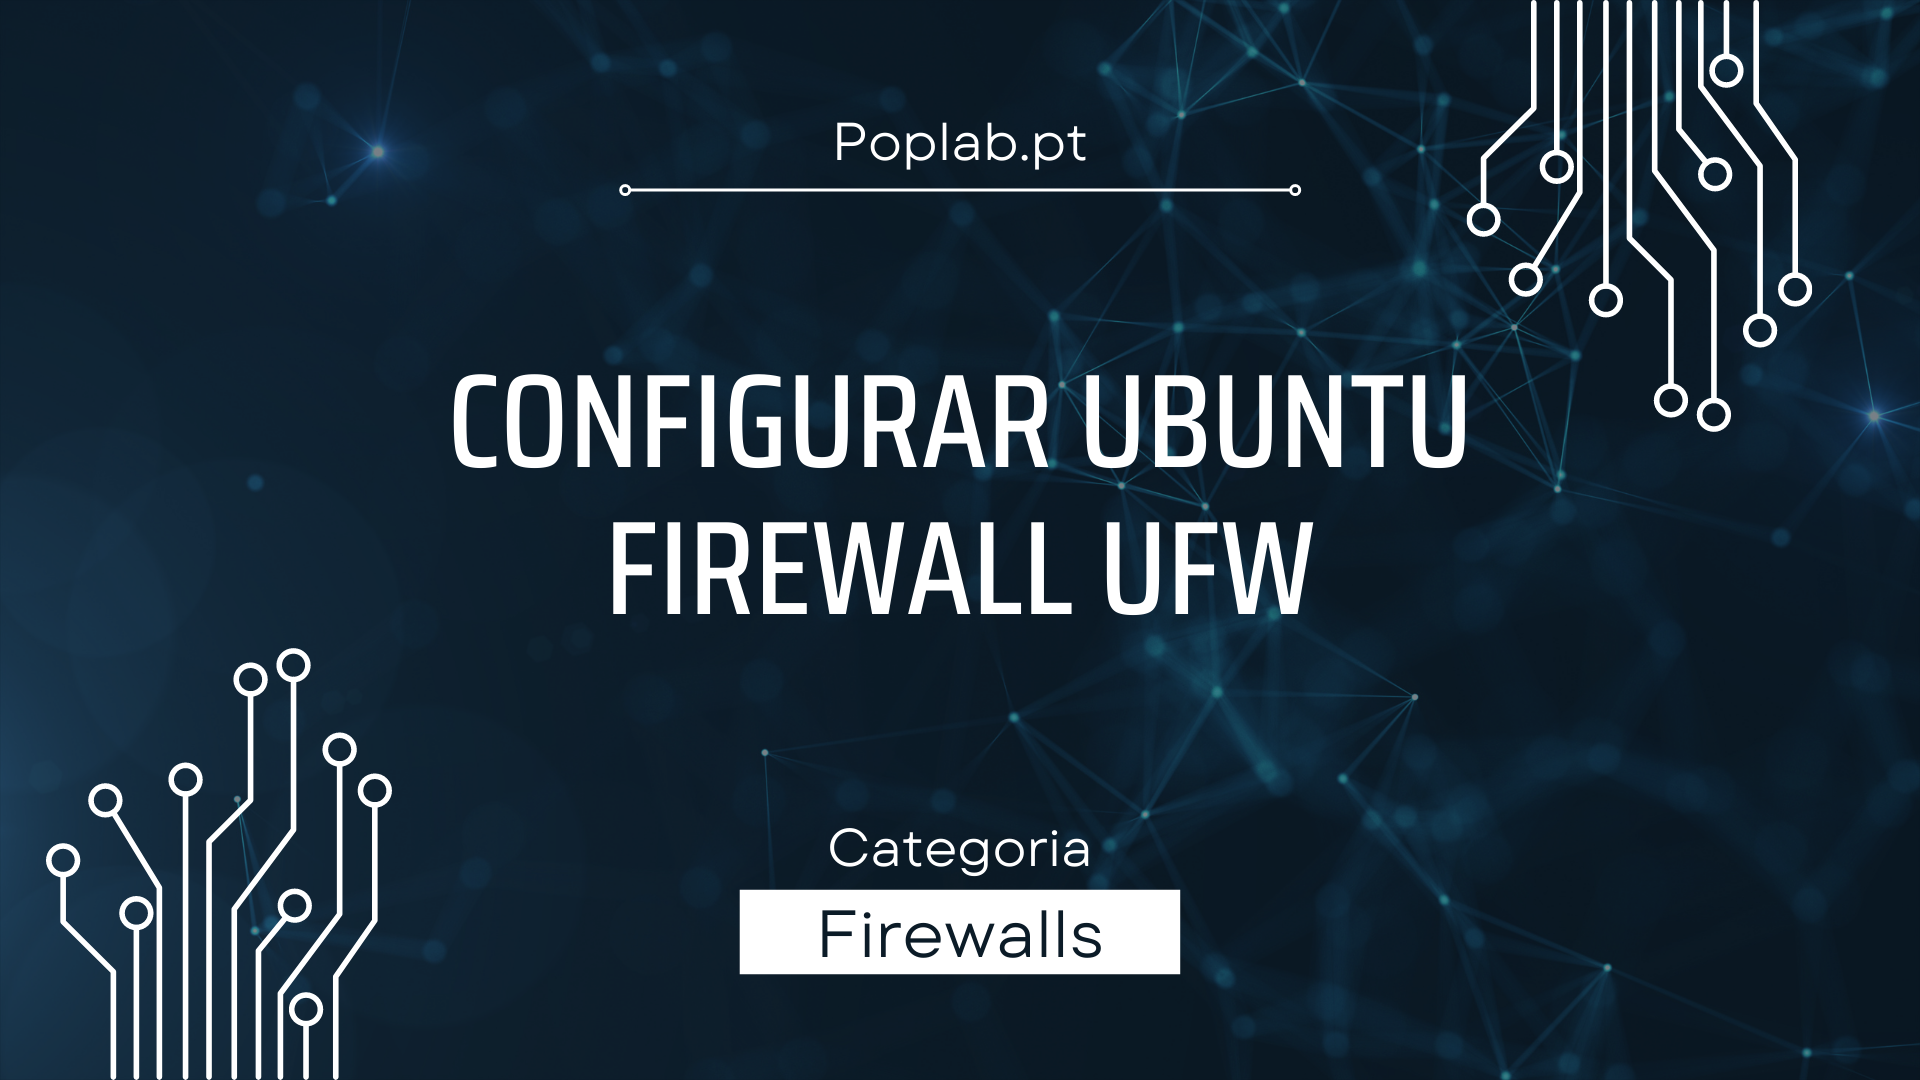 configurar Ubuntu firewall UFW